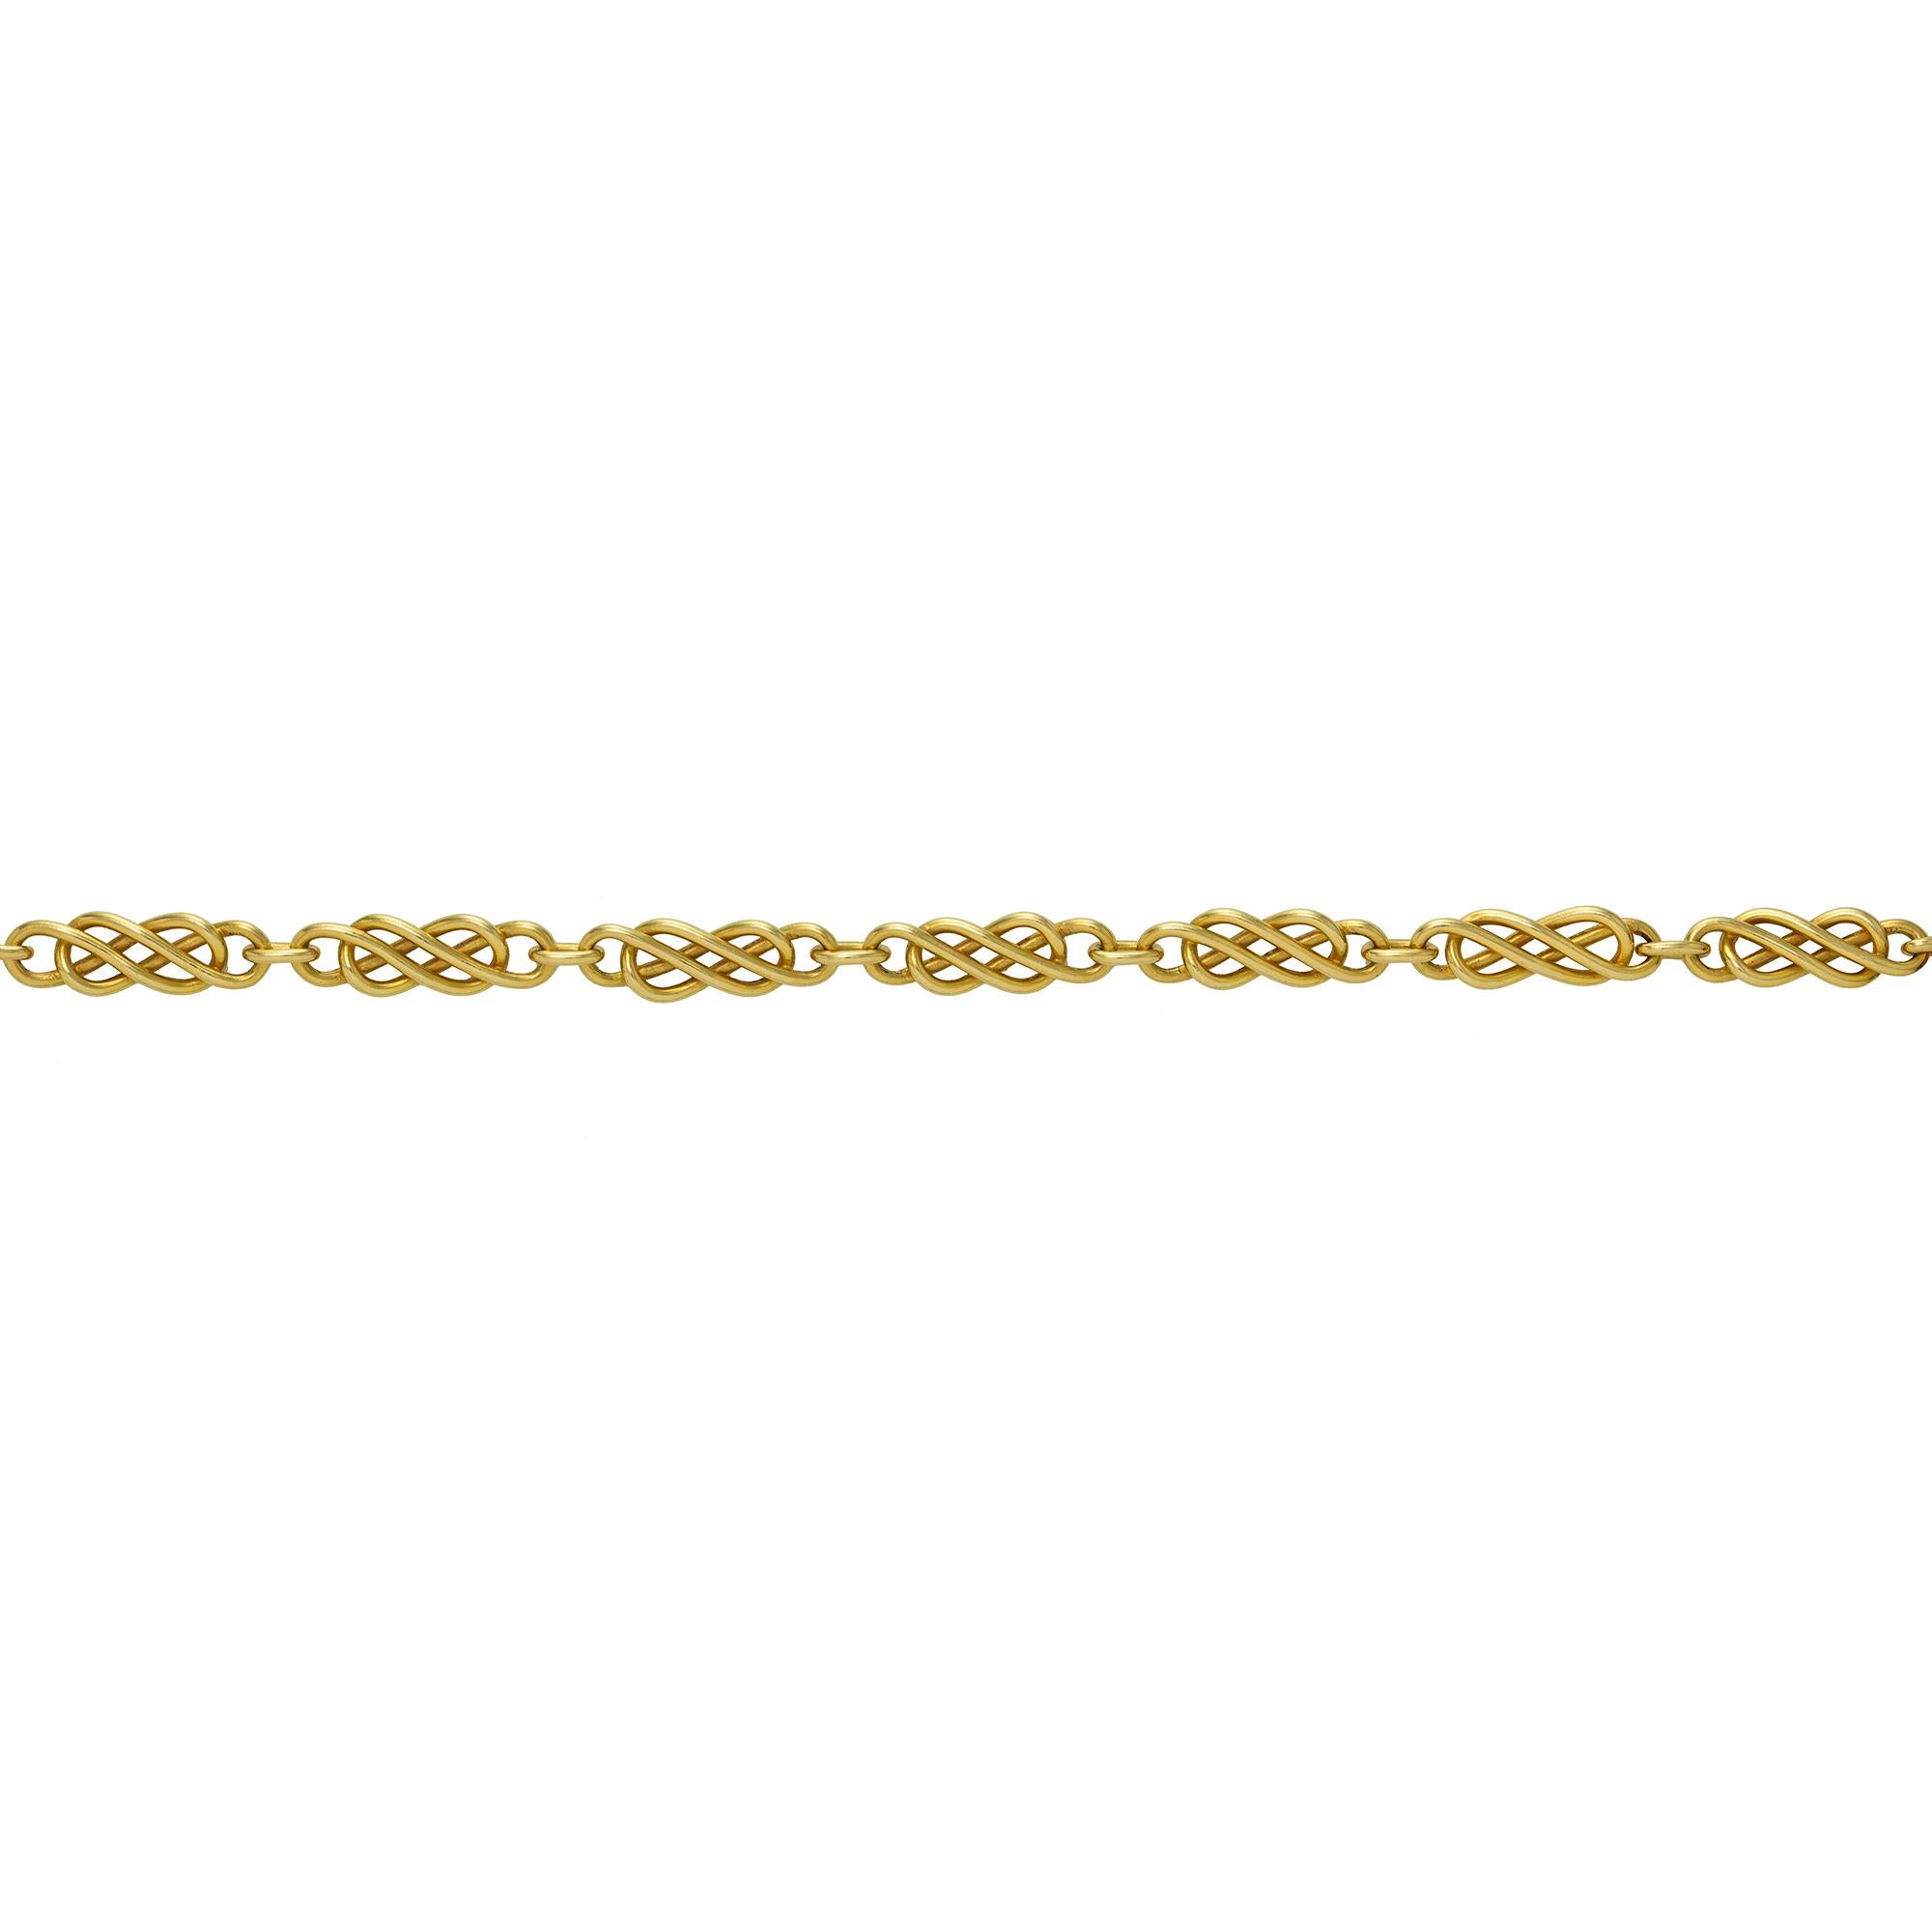 Eine handgefertigte keltische Goldkette von Lucie Heskett-Brem, der Goldweberin aus Luzern, bestehend aus einundzwanzig Teilen mit keltischem Muster, gestempelt auf 18 Karat Gold, Maße ca. 45 x 0,65 cm, Bruttogewicht 43,6 Gramm.
Sollten Sie sich für